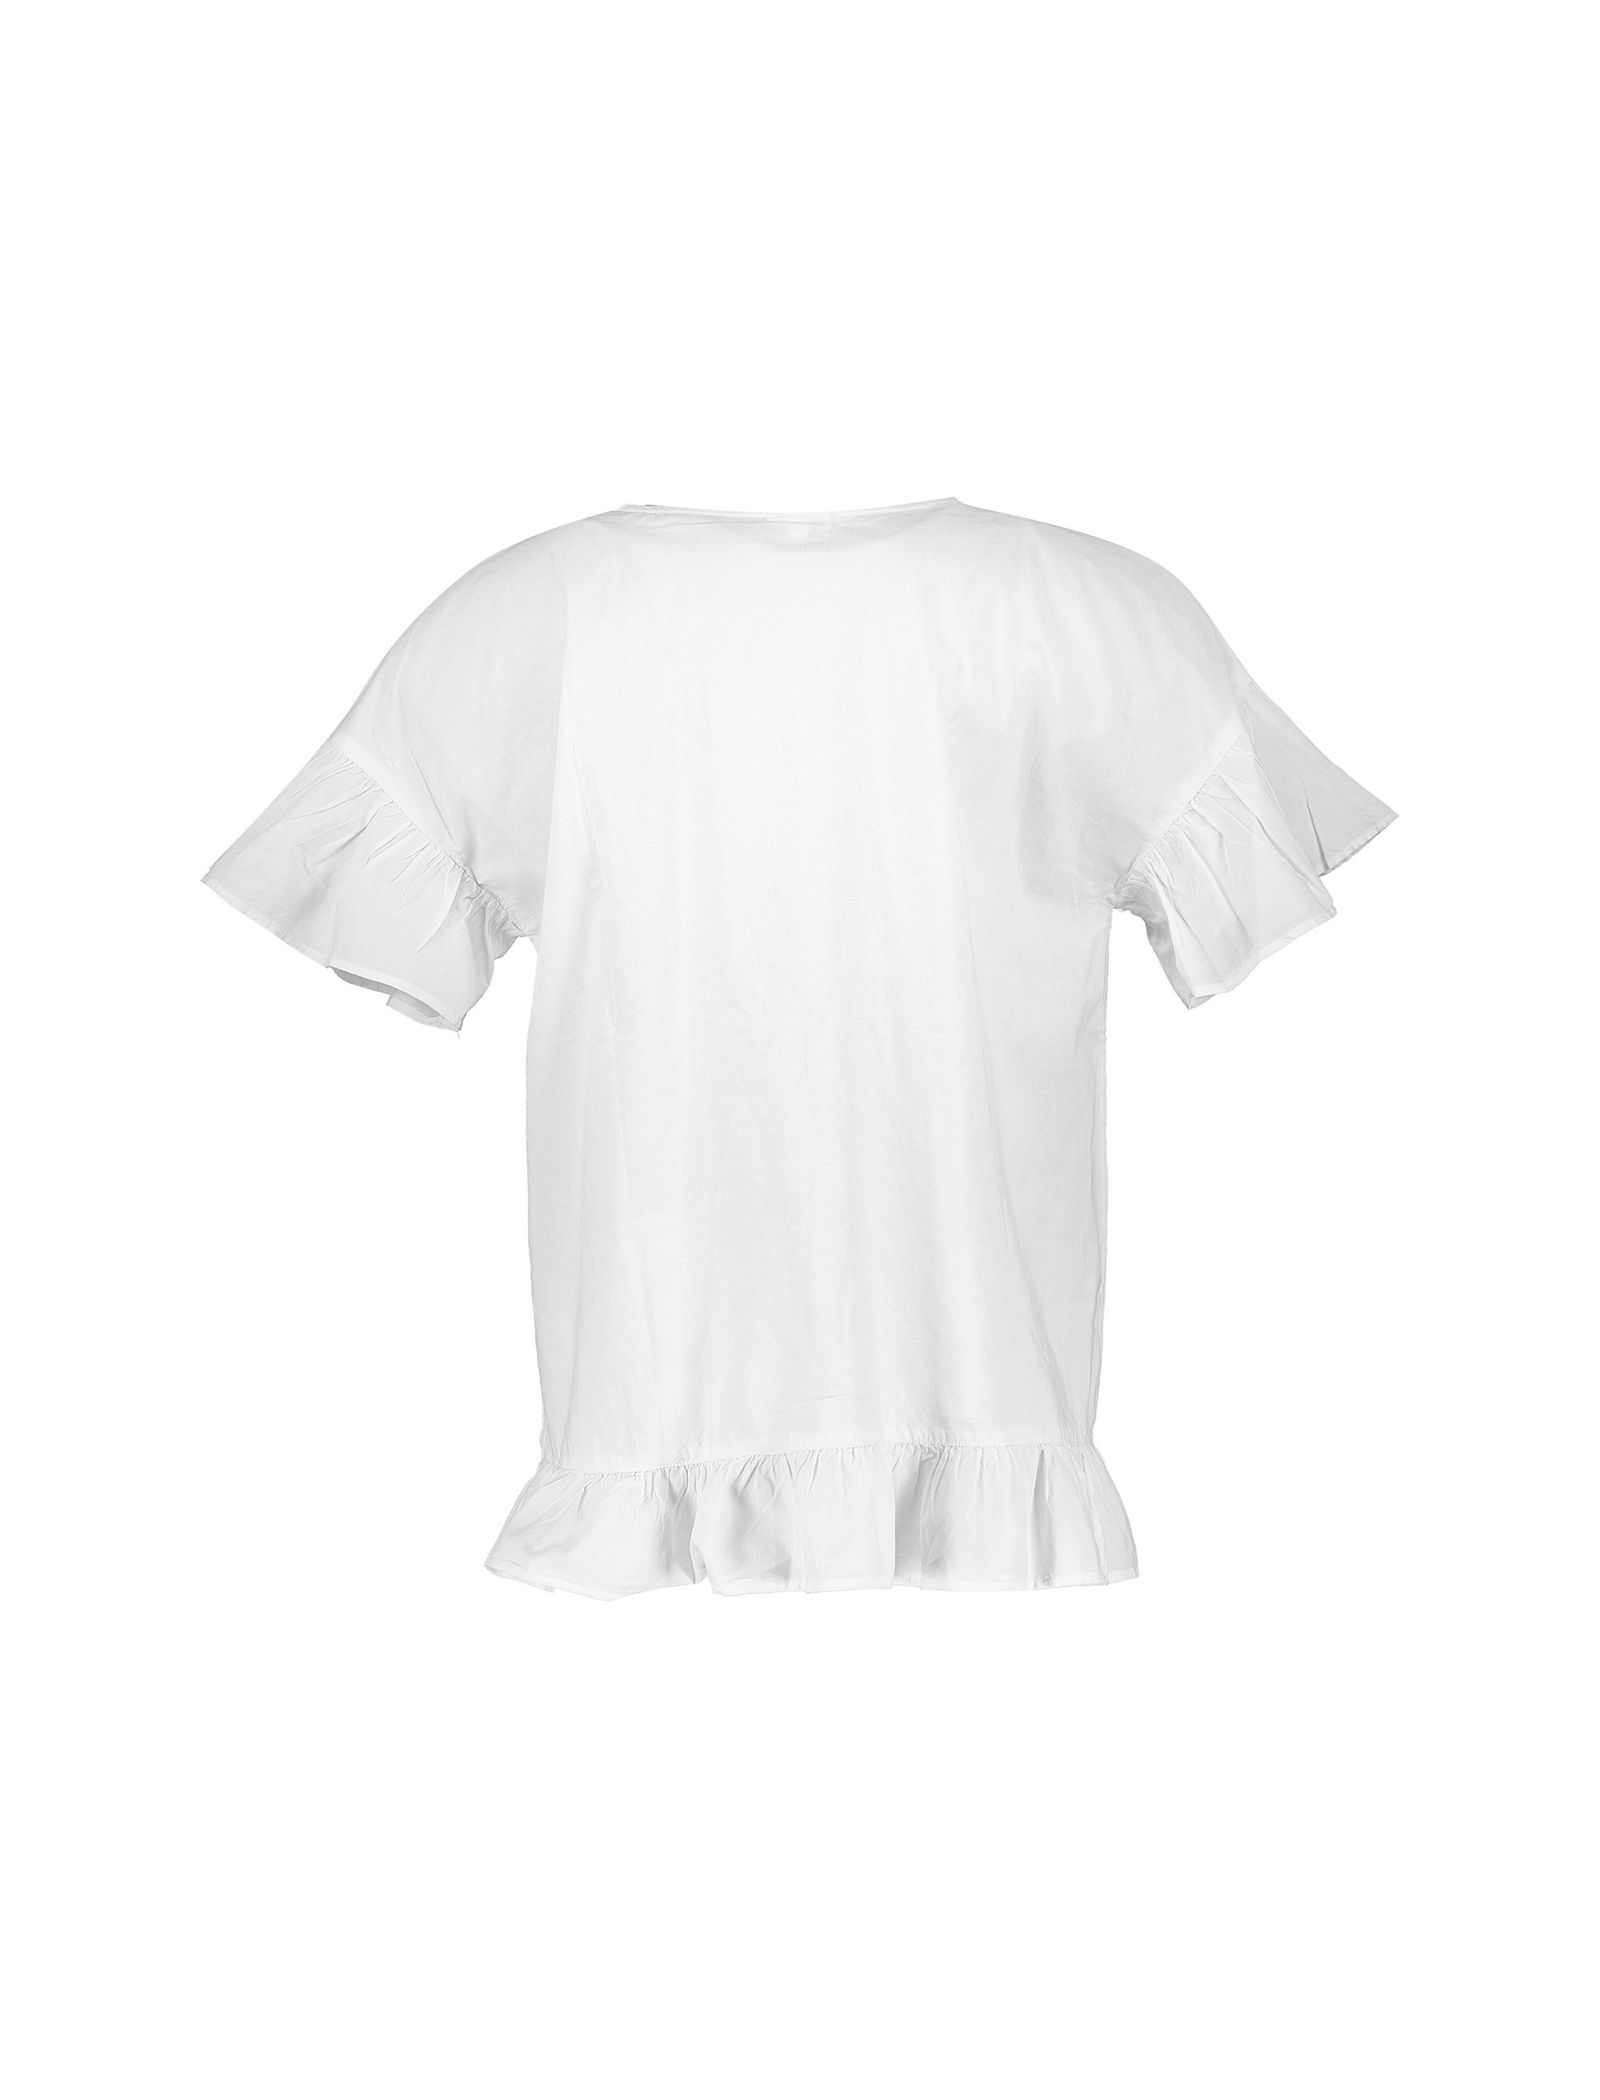 تی شرت و شلوار نخی زنانه - یوپیم - طوسي و سفيد - 2